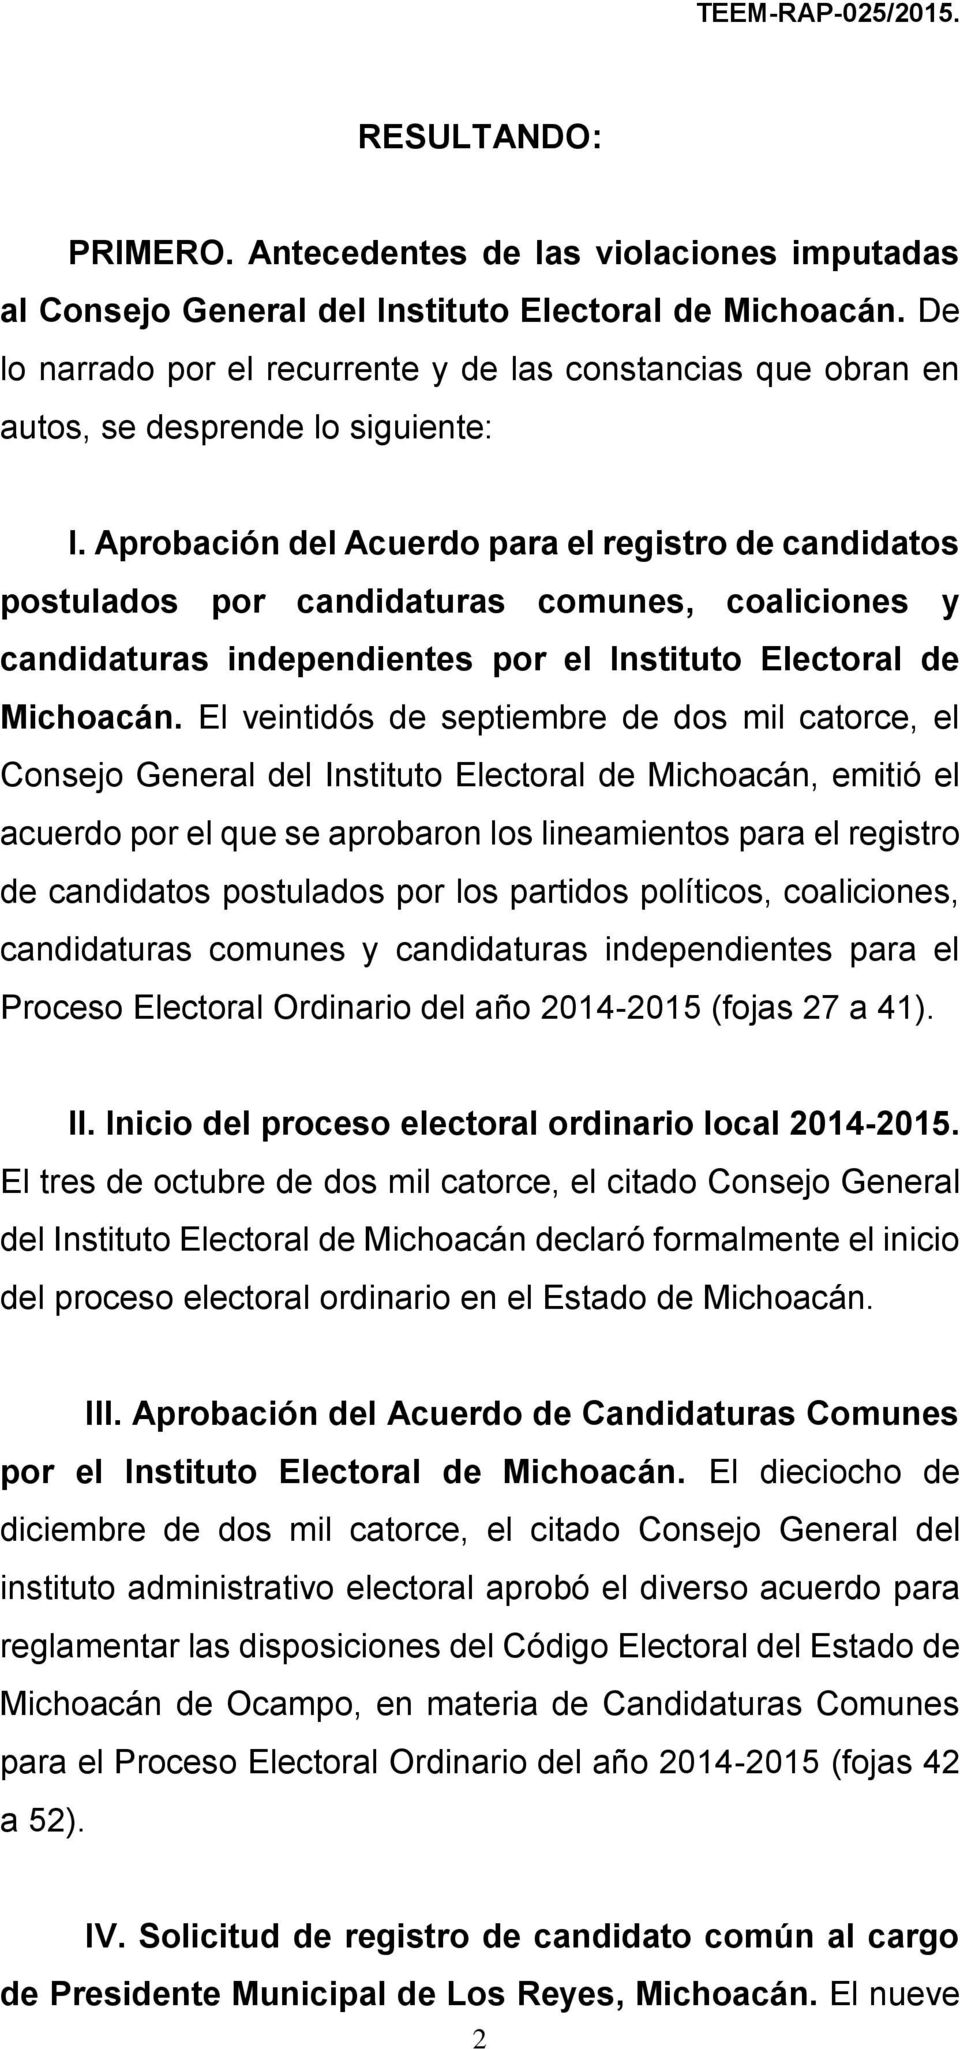 Aprobación del Acuerdo para el registro de candidatos postulados por candidaturas comunes, coaliciones y candidaturas independientes por el Instituto Electoral de Michoacán.